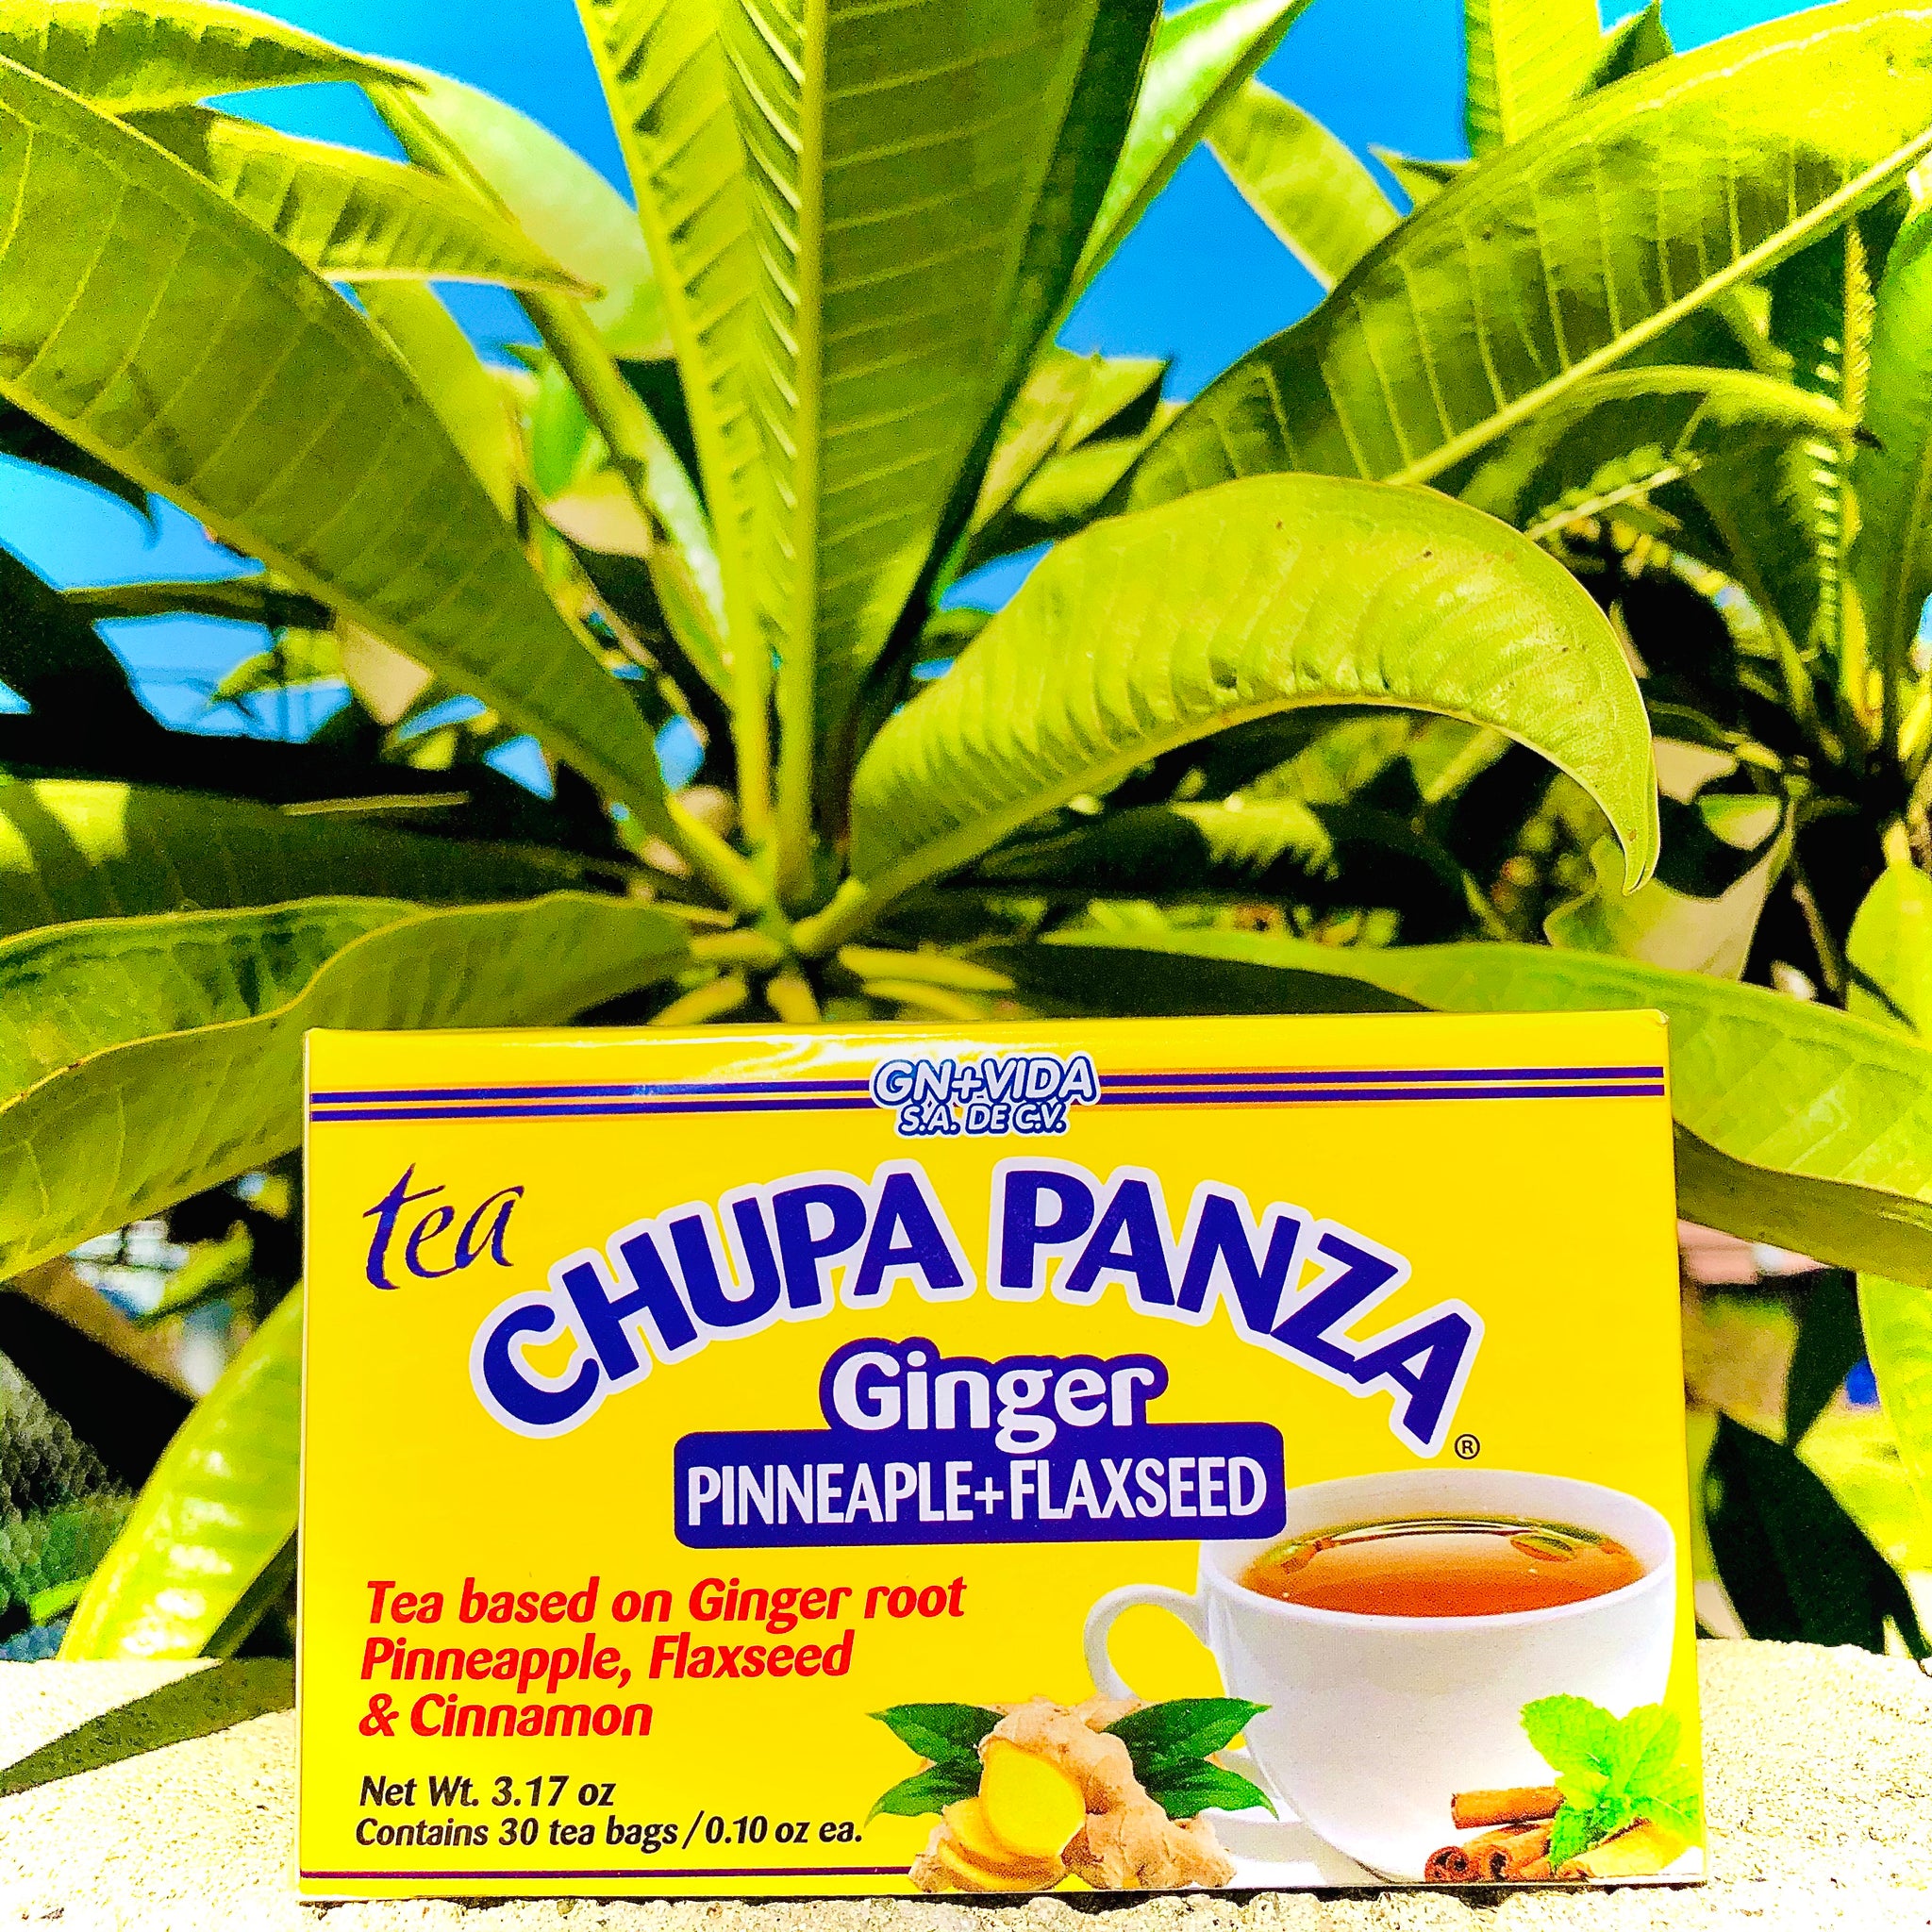 Té Chupa Panza (jengibre, Piña Y Linaza) 30 Sobres De 3g C/u Gn+vida